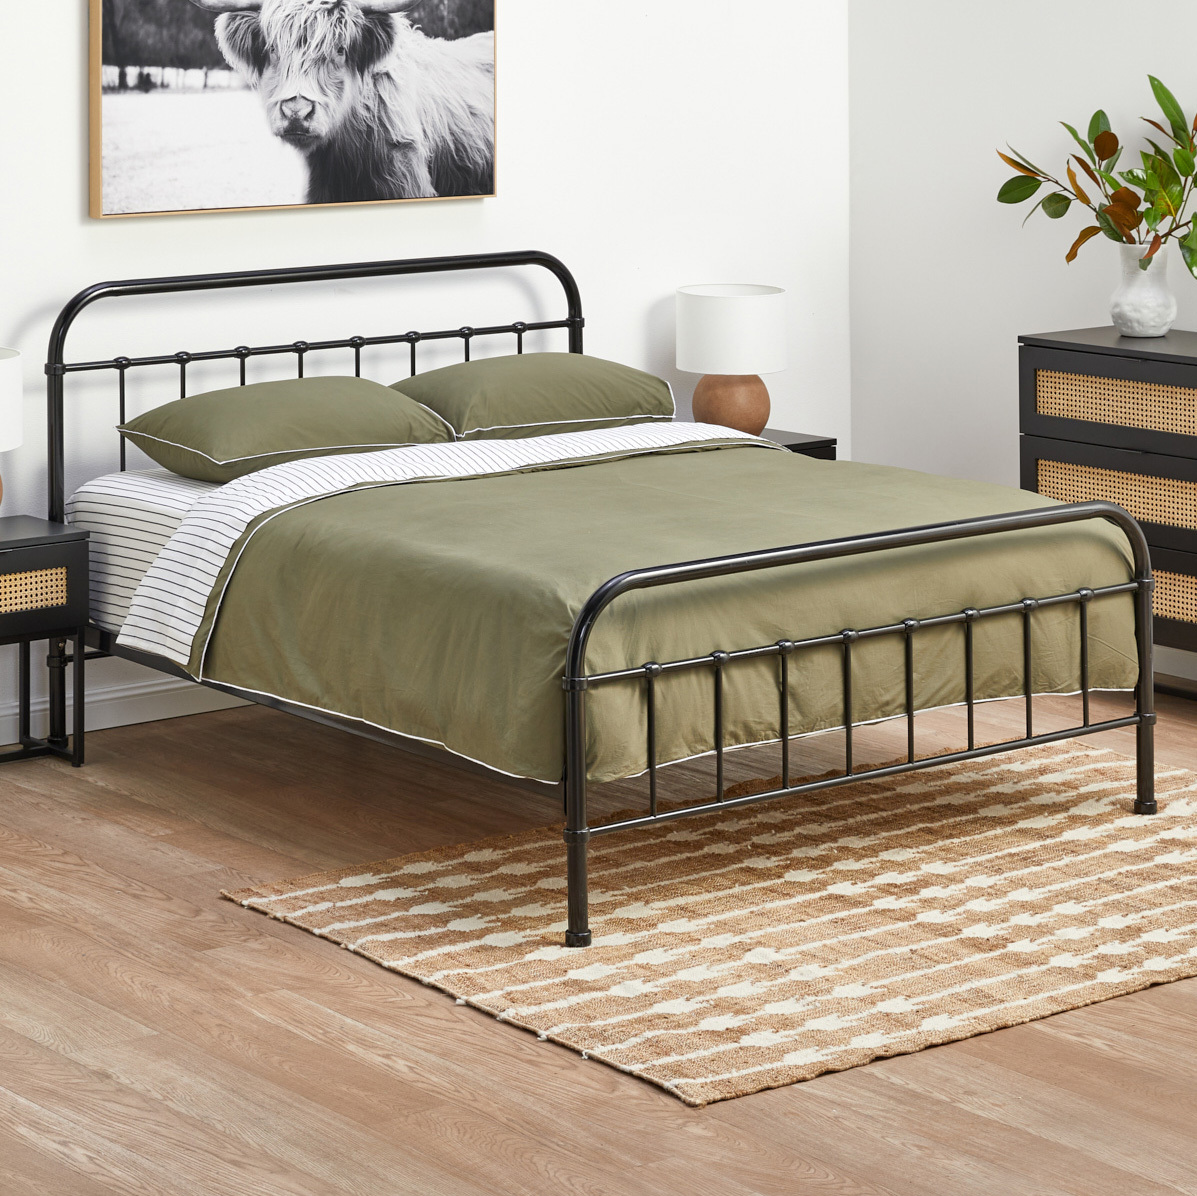 Webster Black Bailey Metal Bed Frame, Metal Bed Rails For King Size Bed